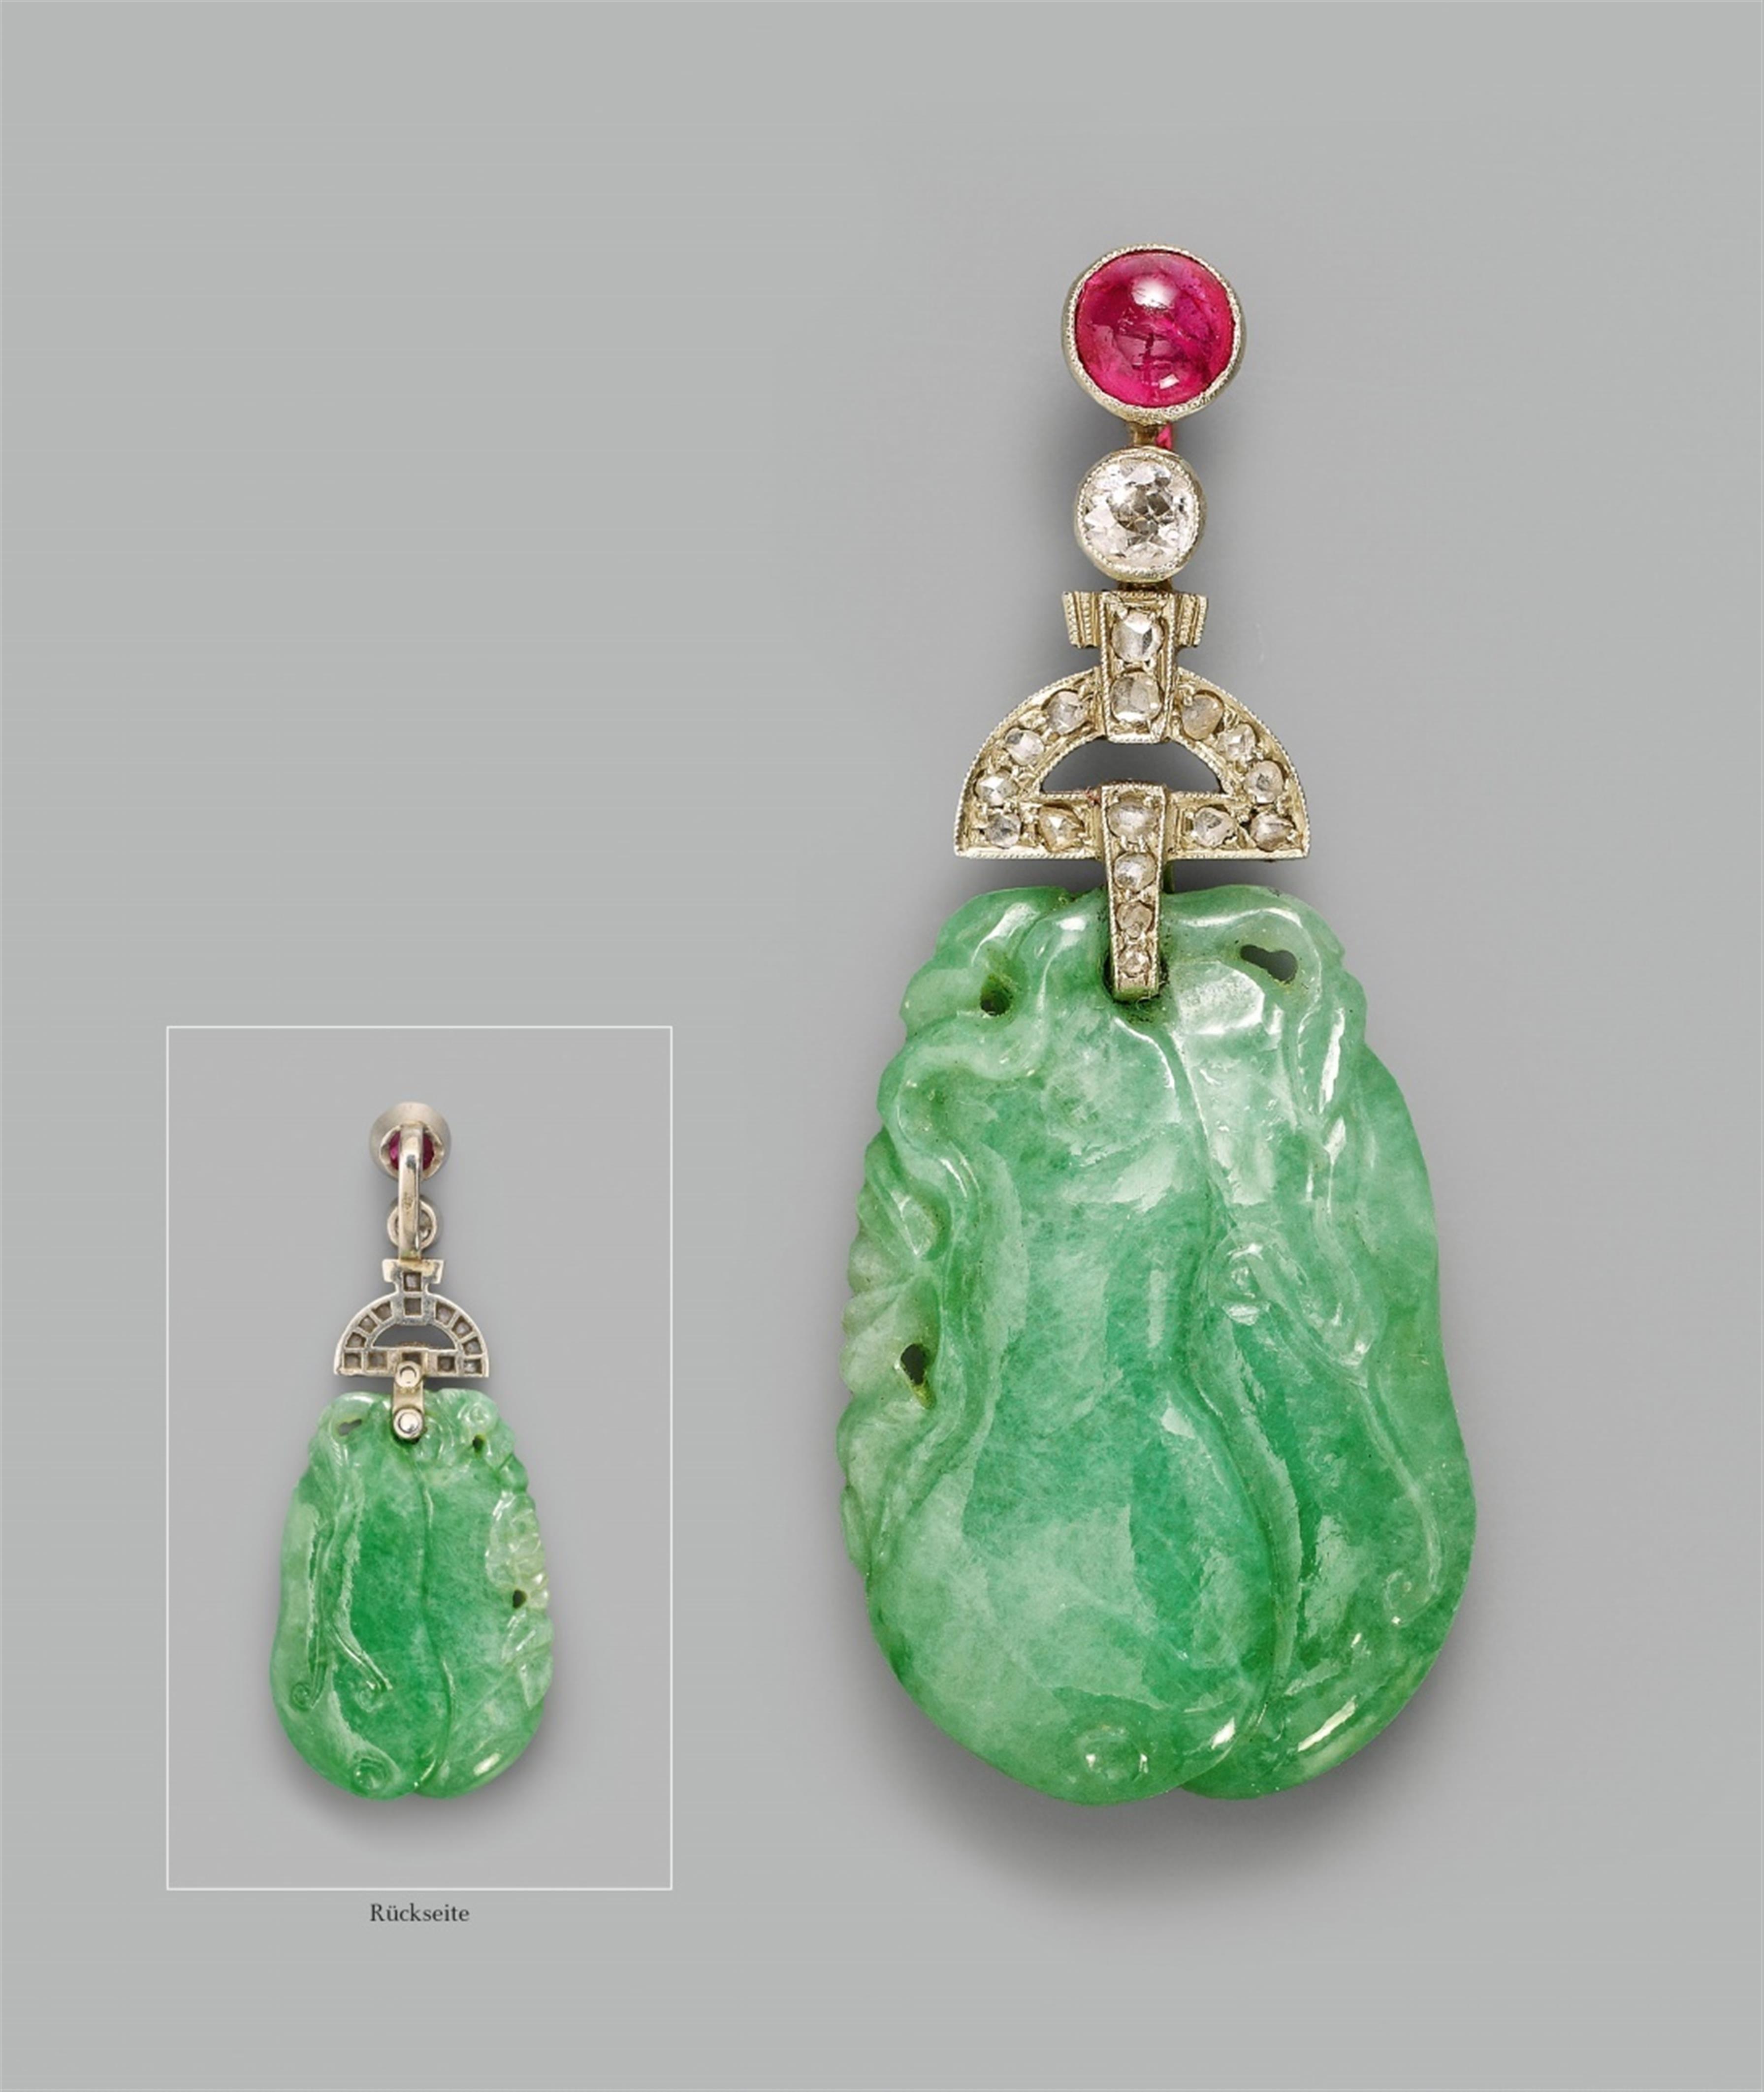 A fine, apple-green jadeite pendant - image-1